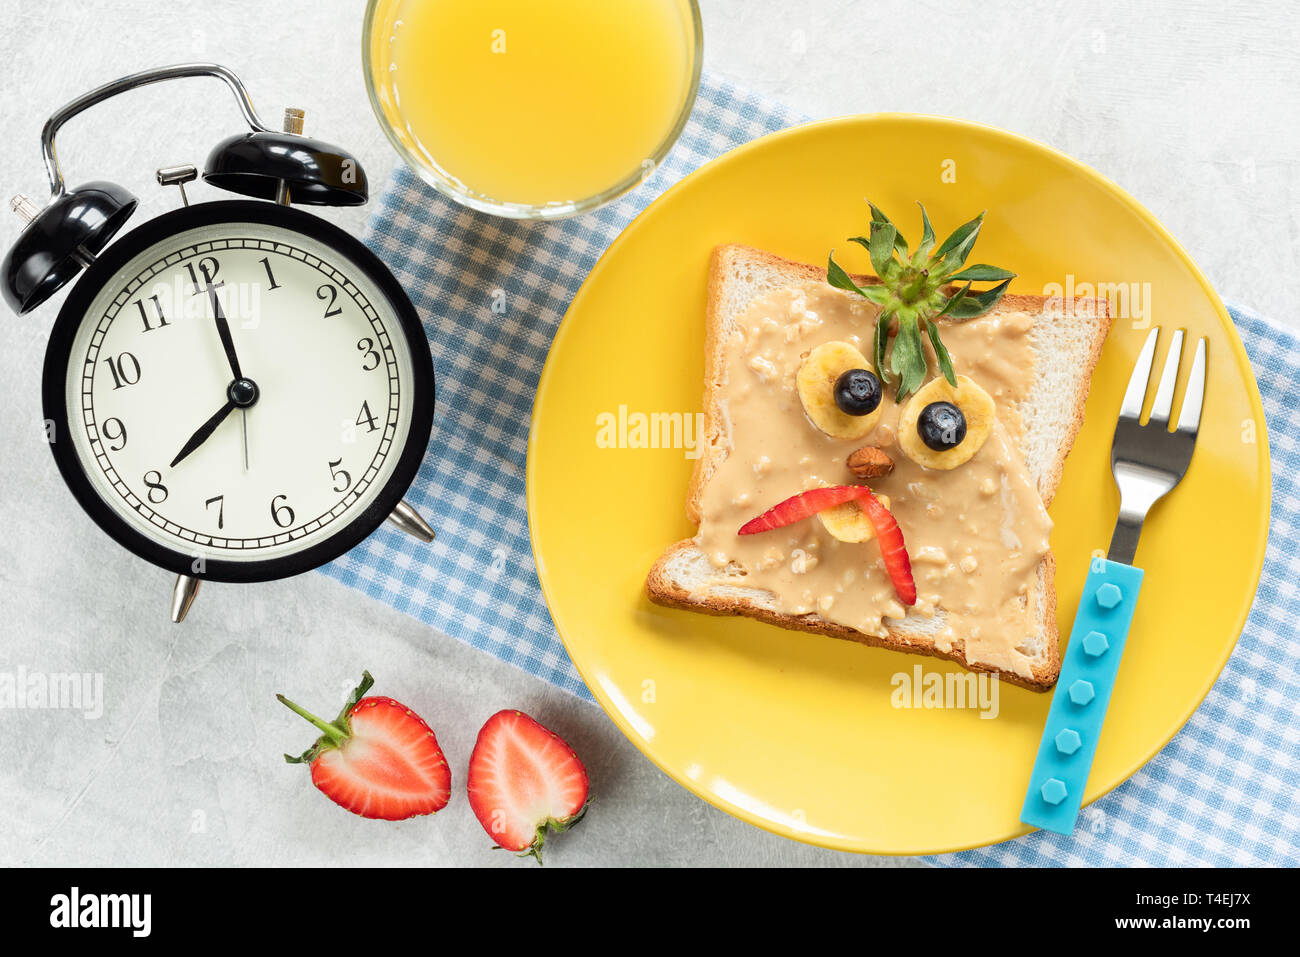 Kinder Frühstück Mahlzeit, Peanut butter Toast mit Funny Face von Angry Vogel oder böse Piraten auf eine trendige gelb Platte. Glas Orangensaft und Uhren auf s Stockfoto